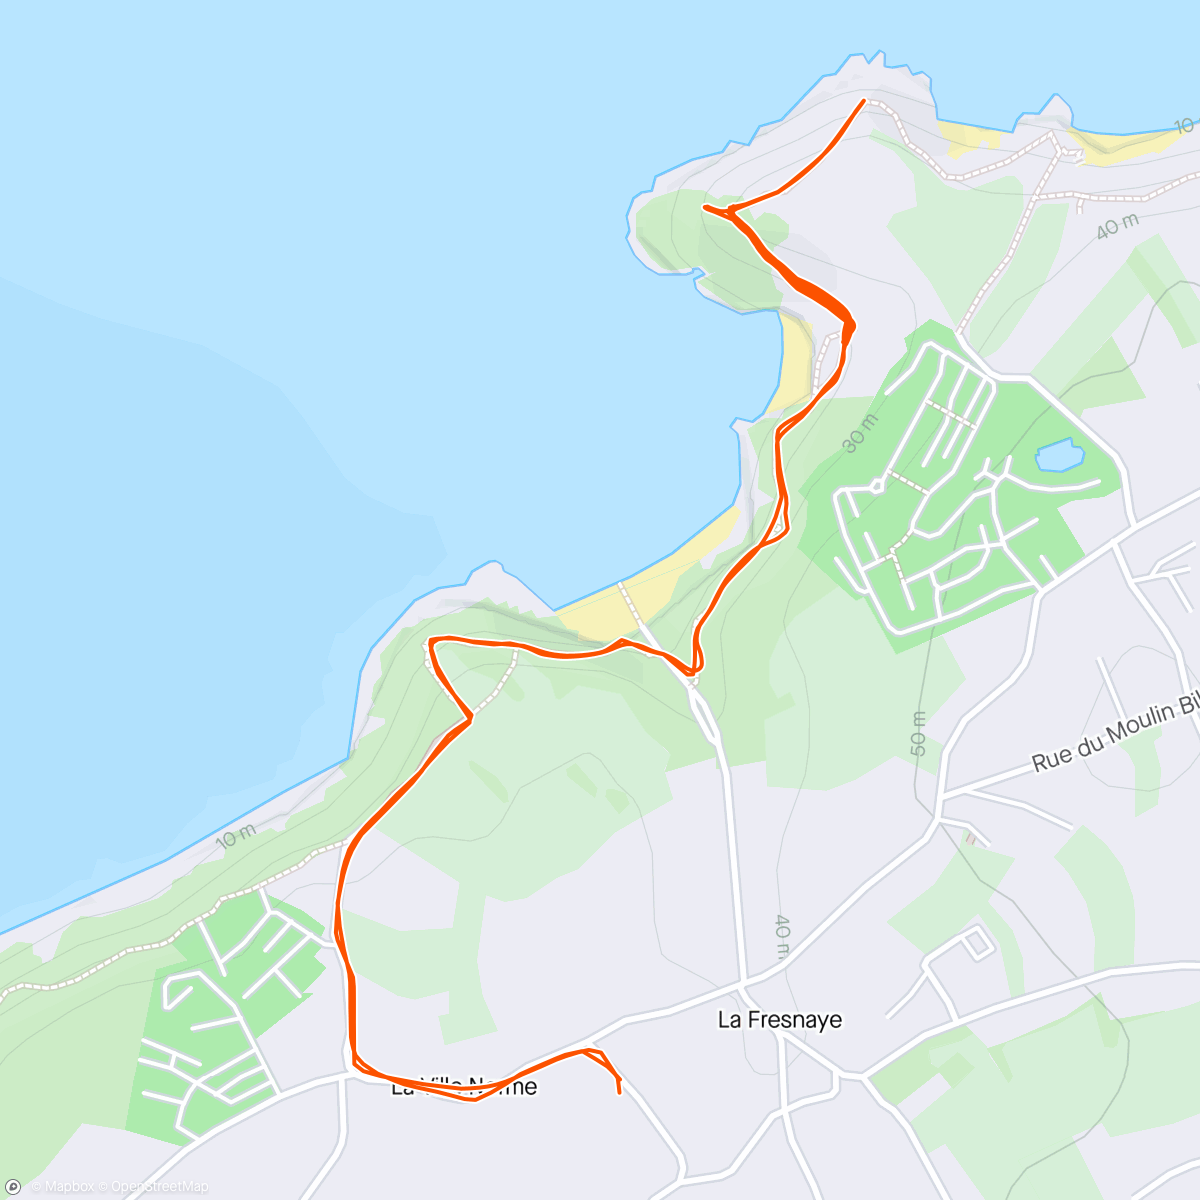 「Saint-Cast séance de côtes 410d+」活動的地圖